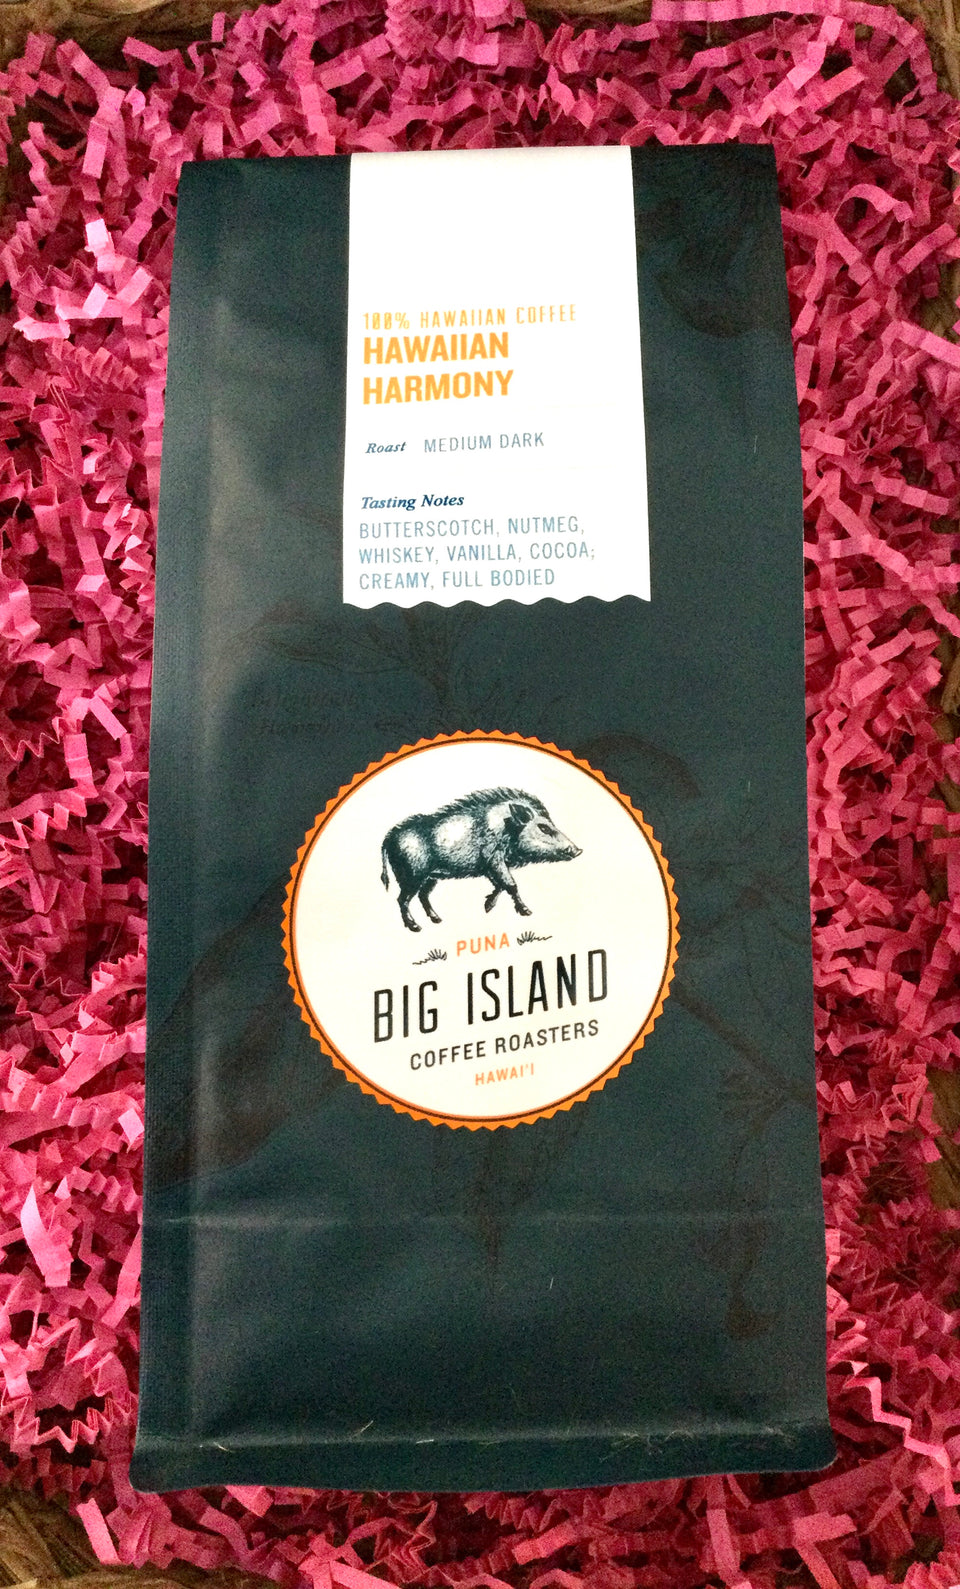 Package of big island roasters coffee